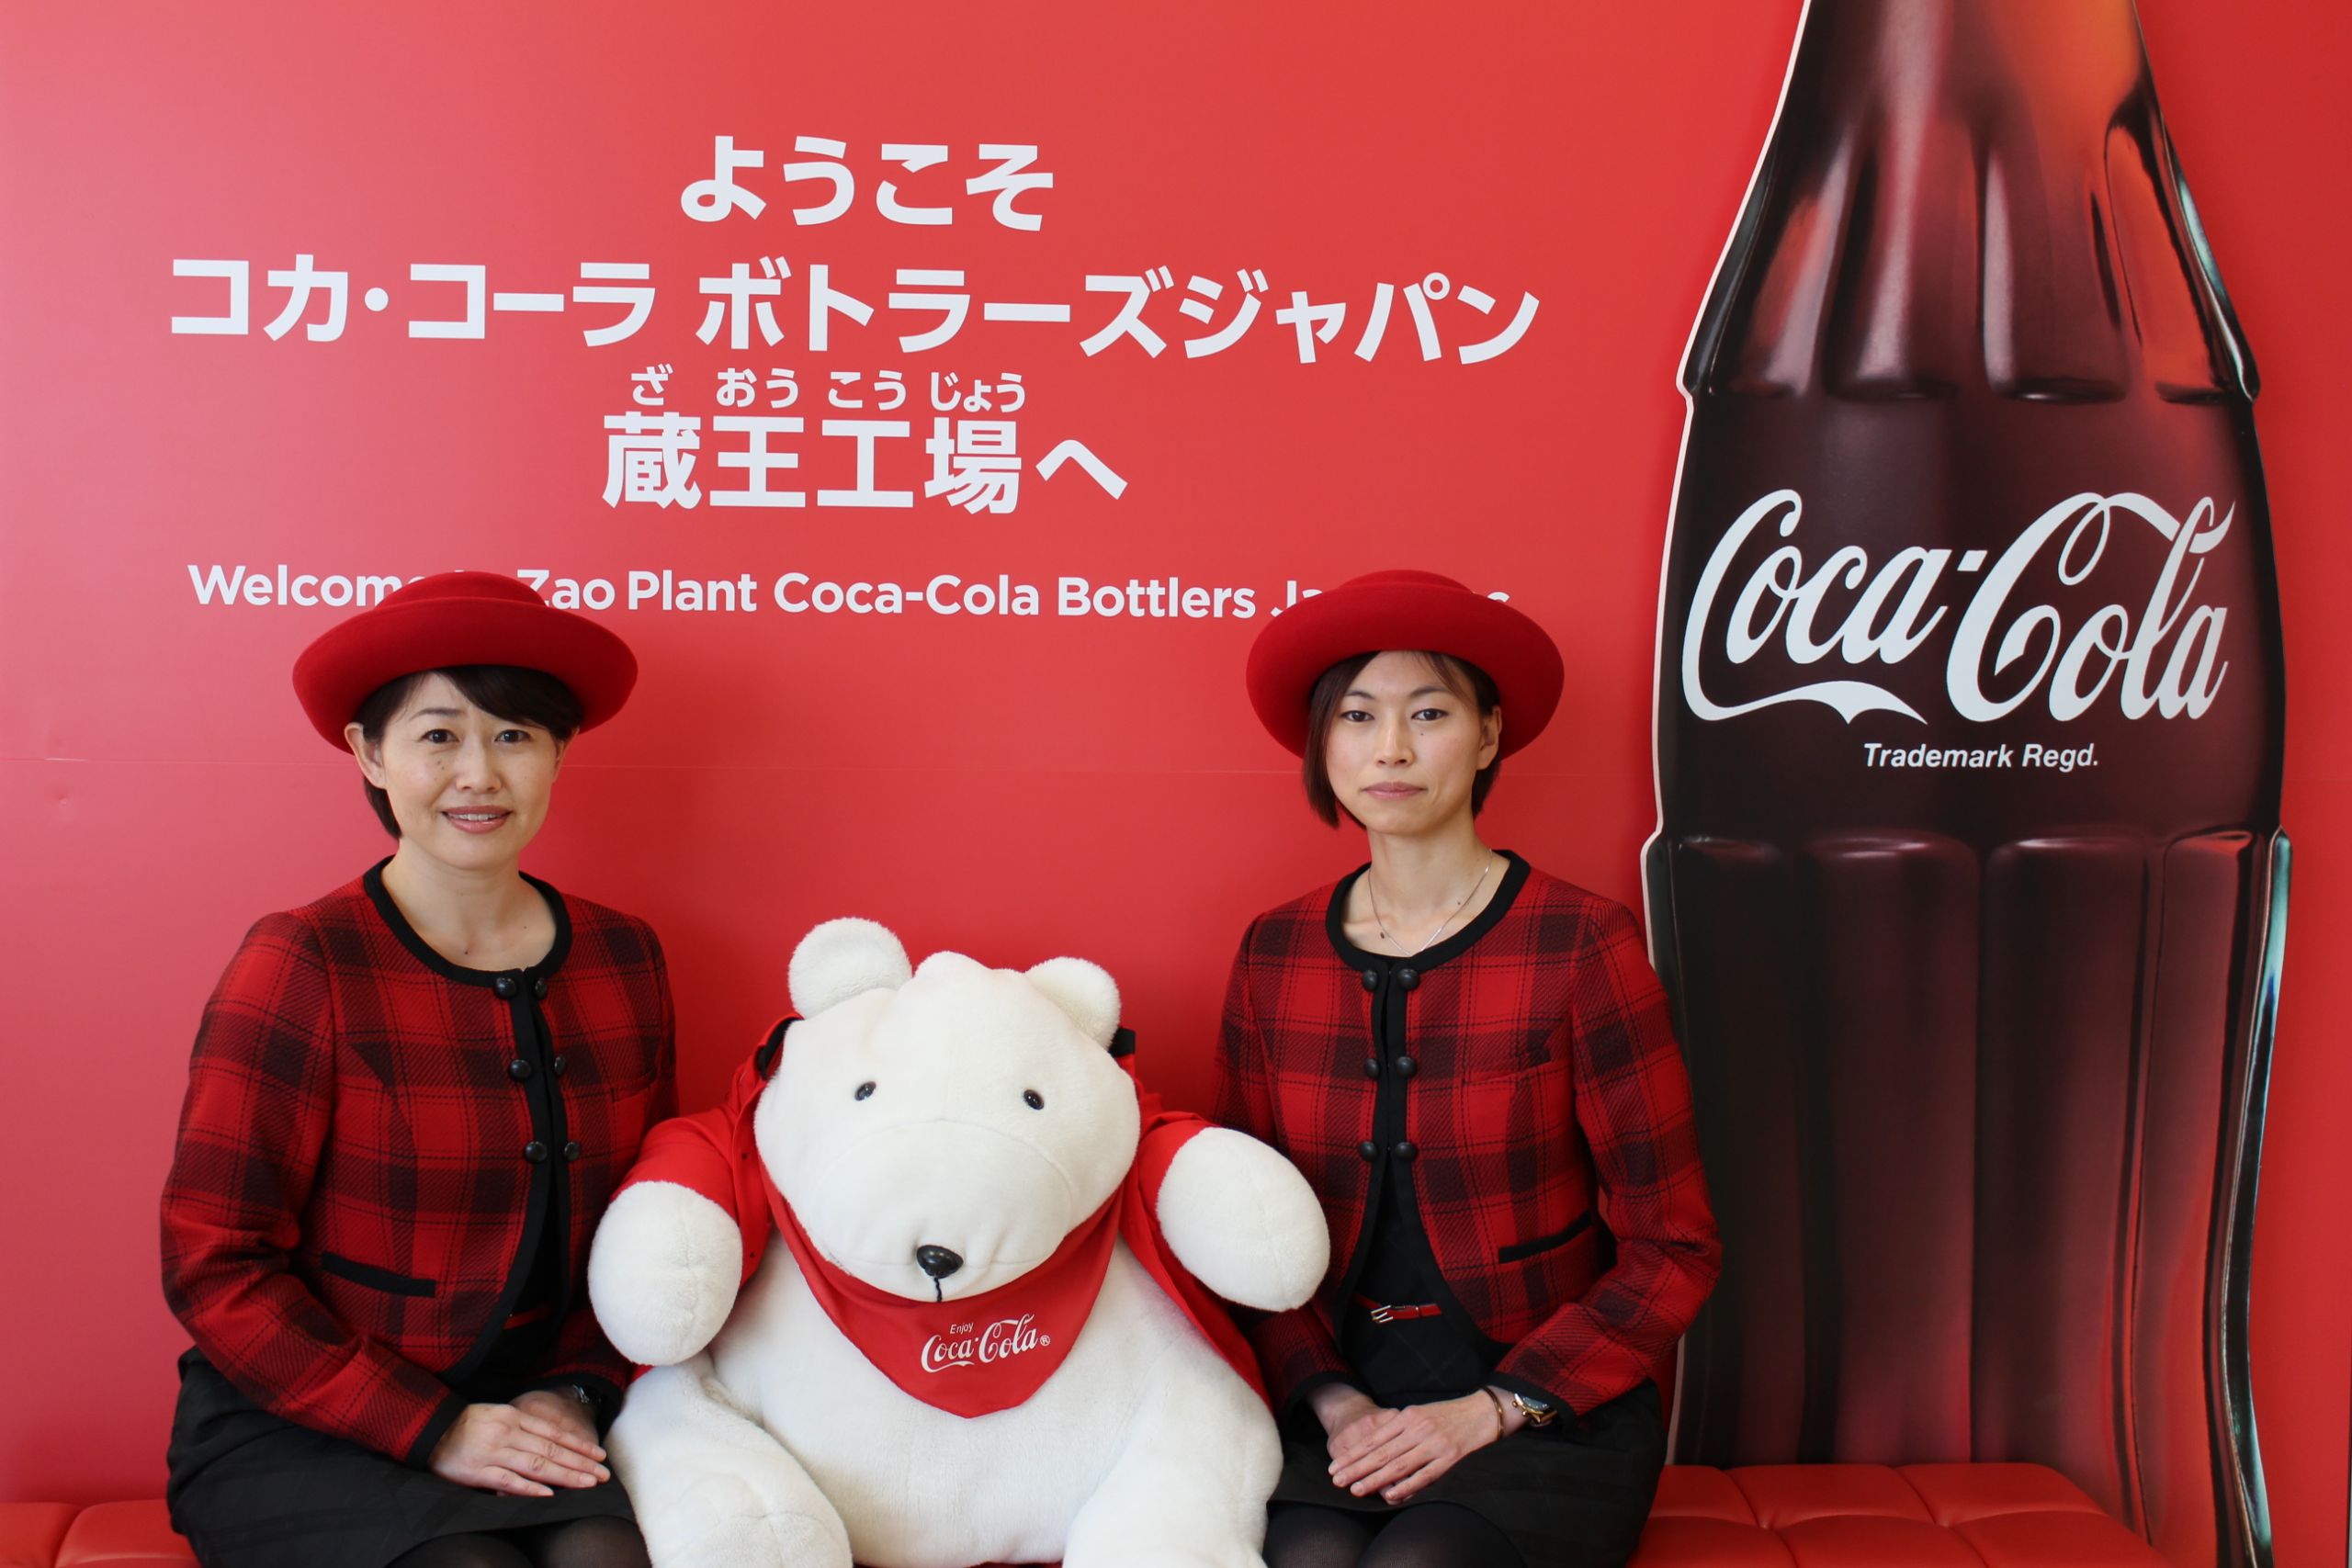 可口可乐日本瓶装工场参观学习